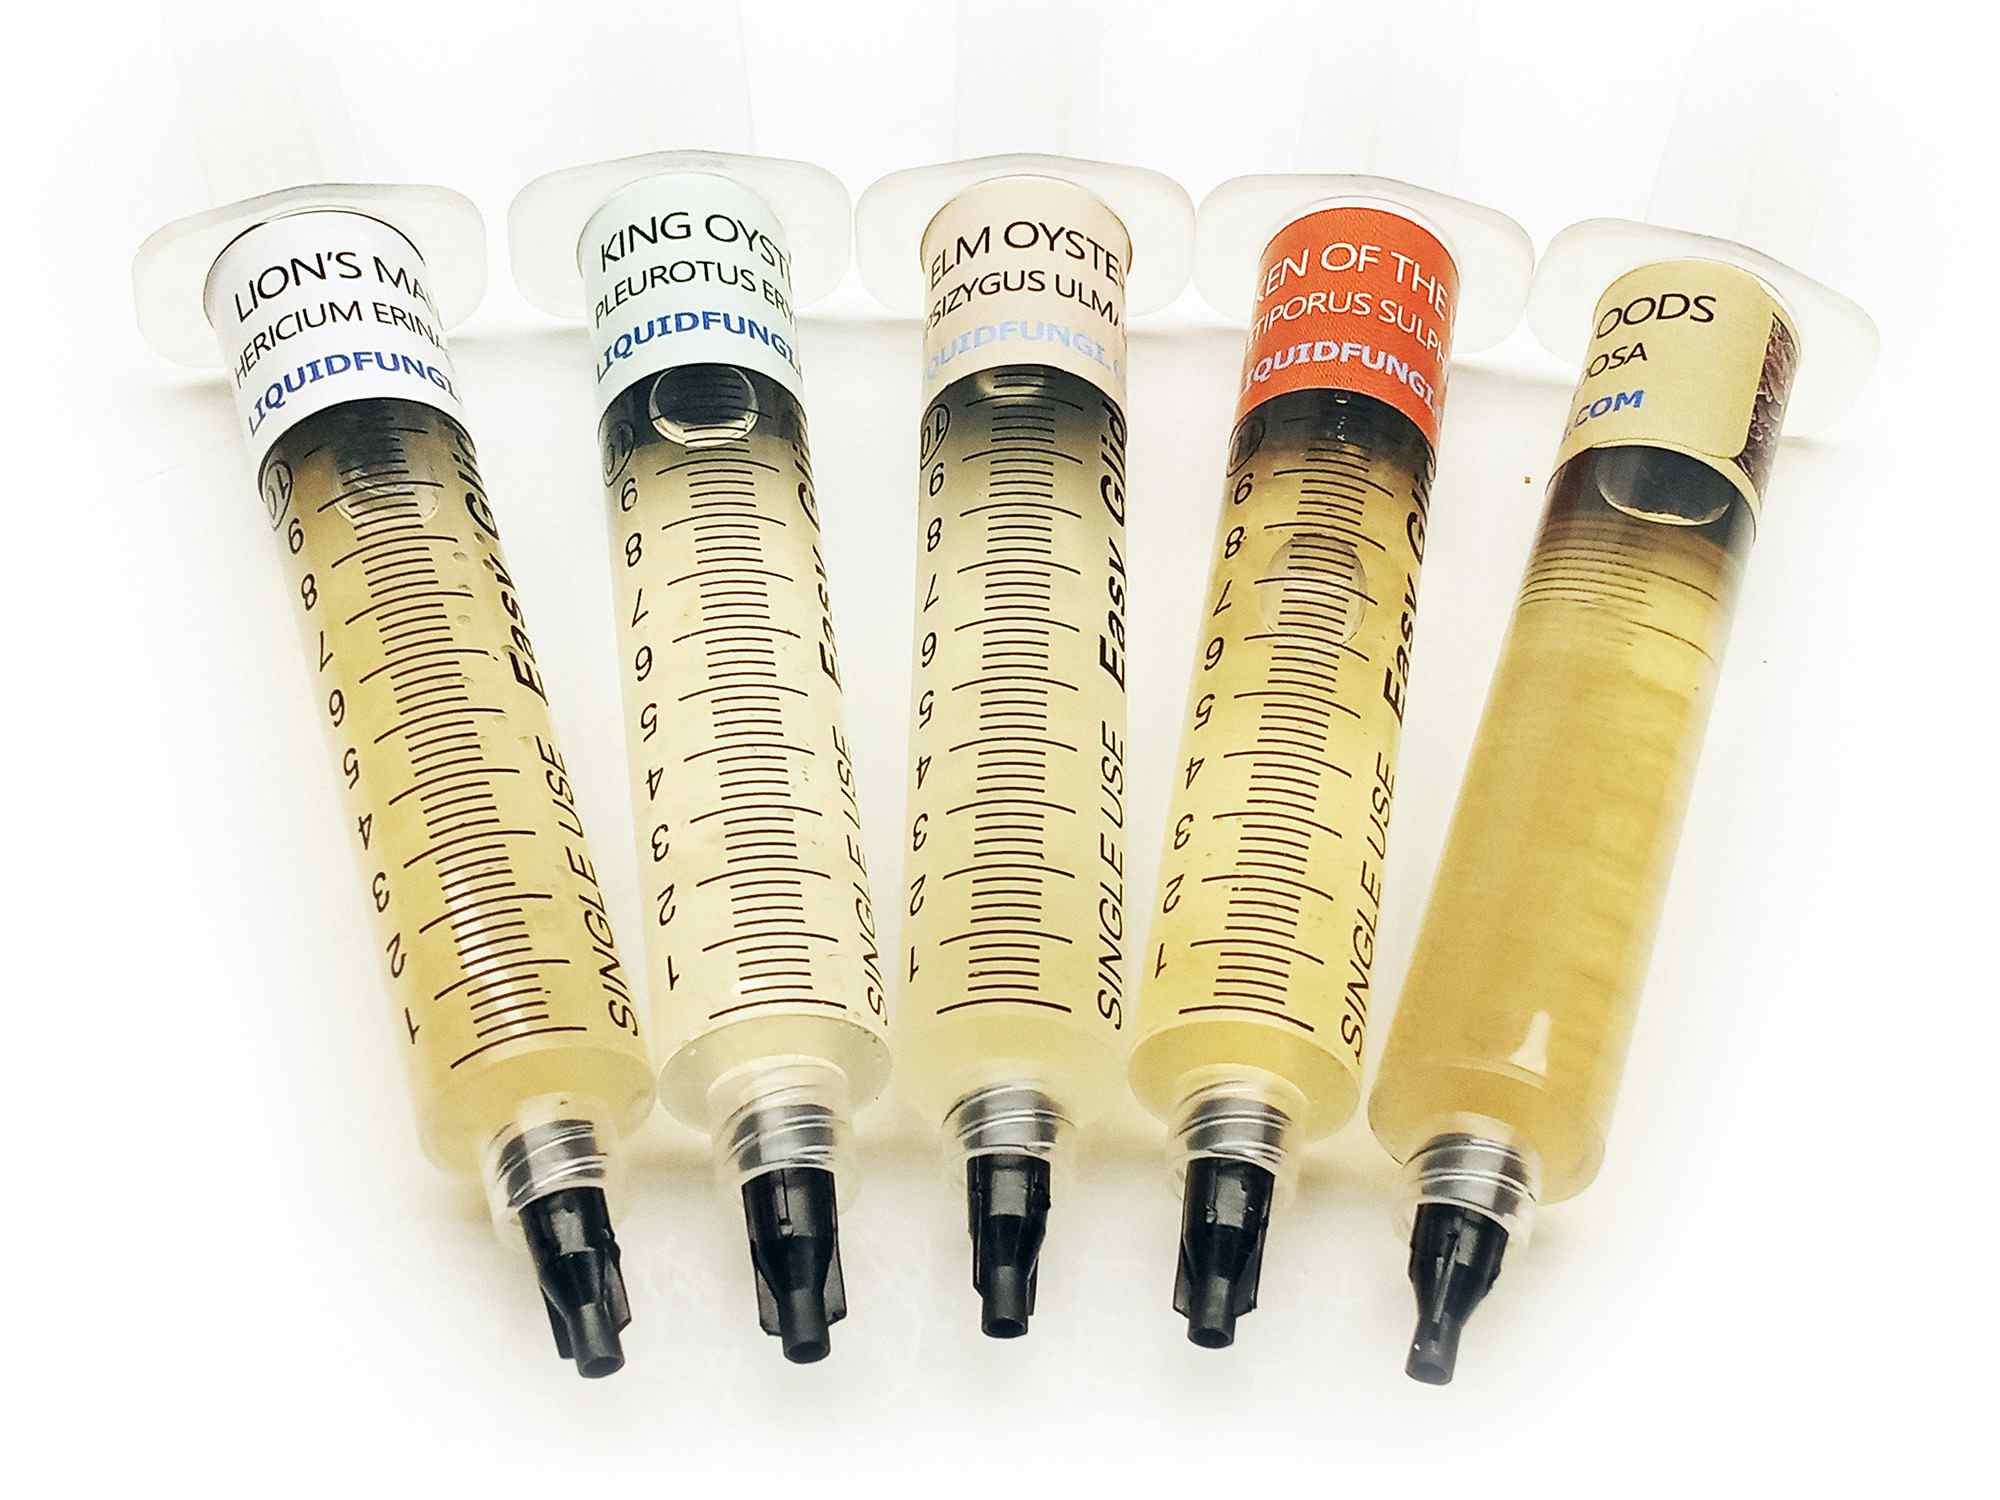 Hardwood Mushroom Liquid Culture Syringe 5 Pack